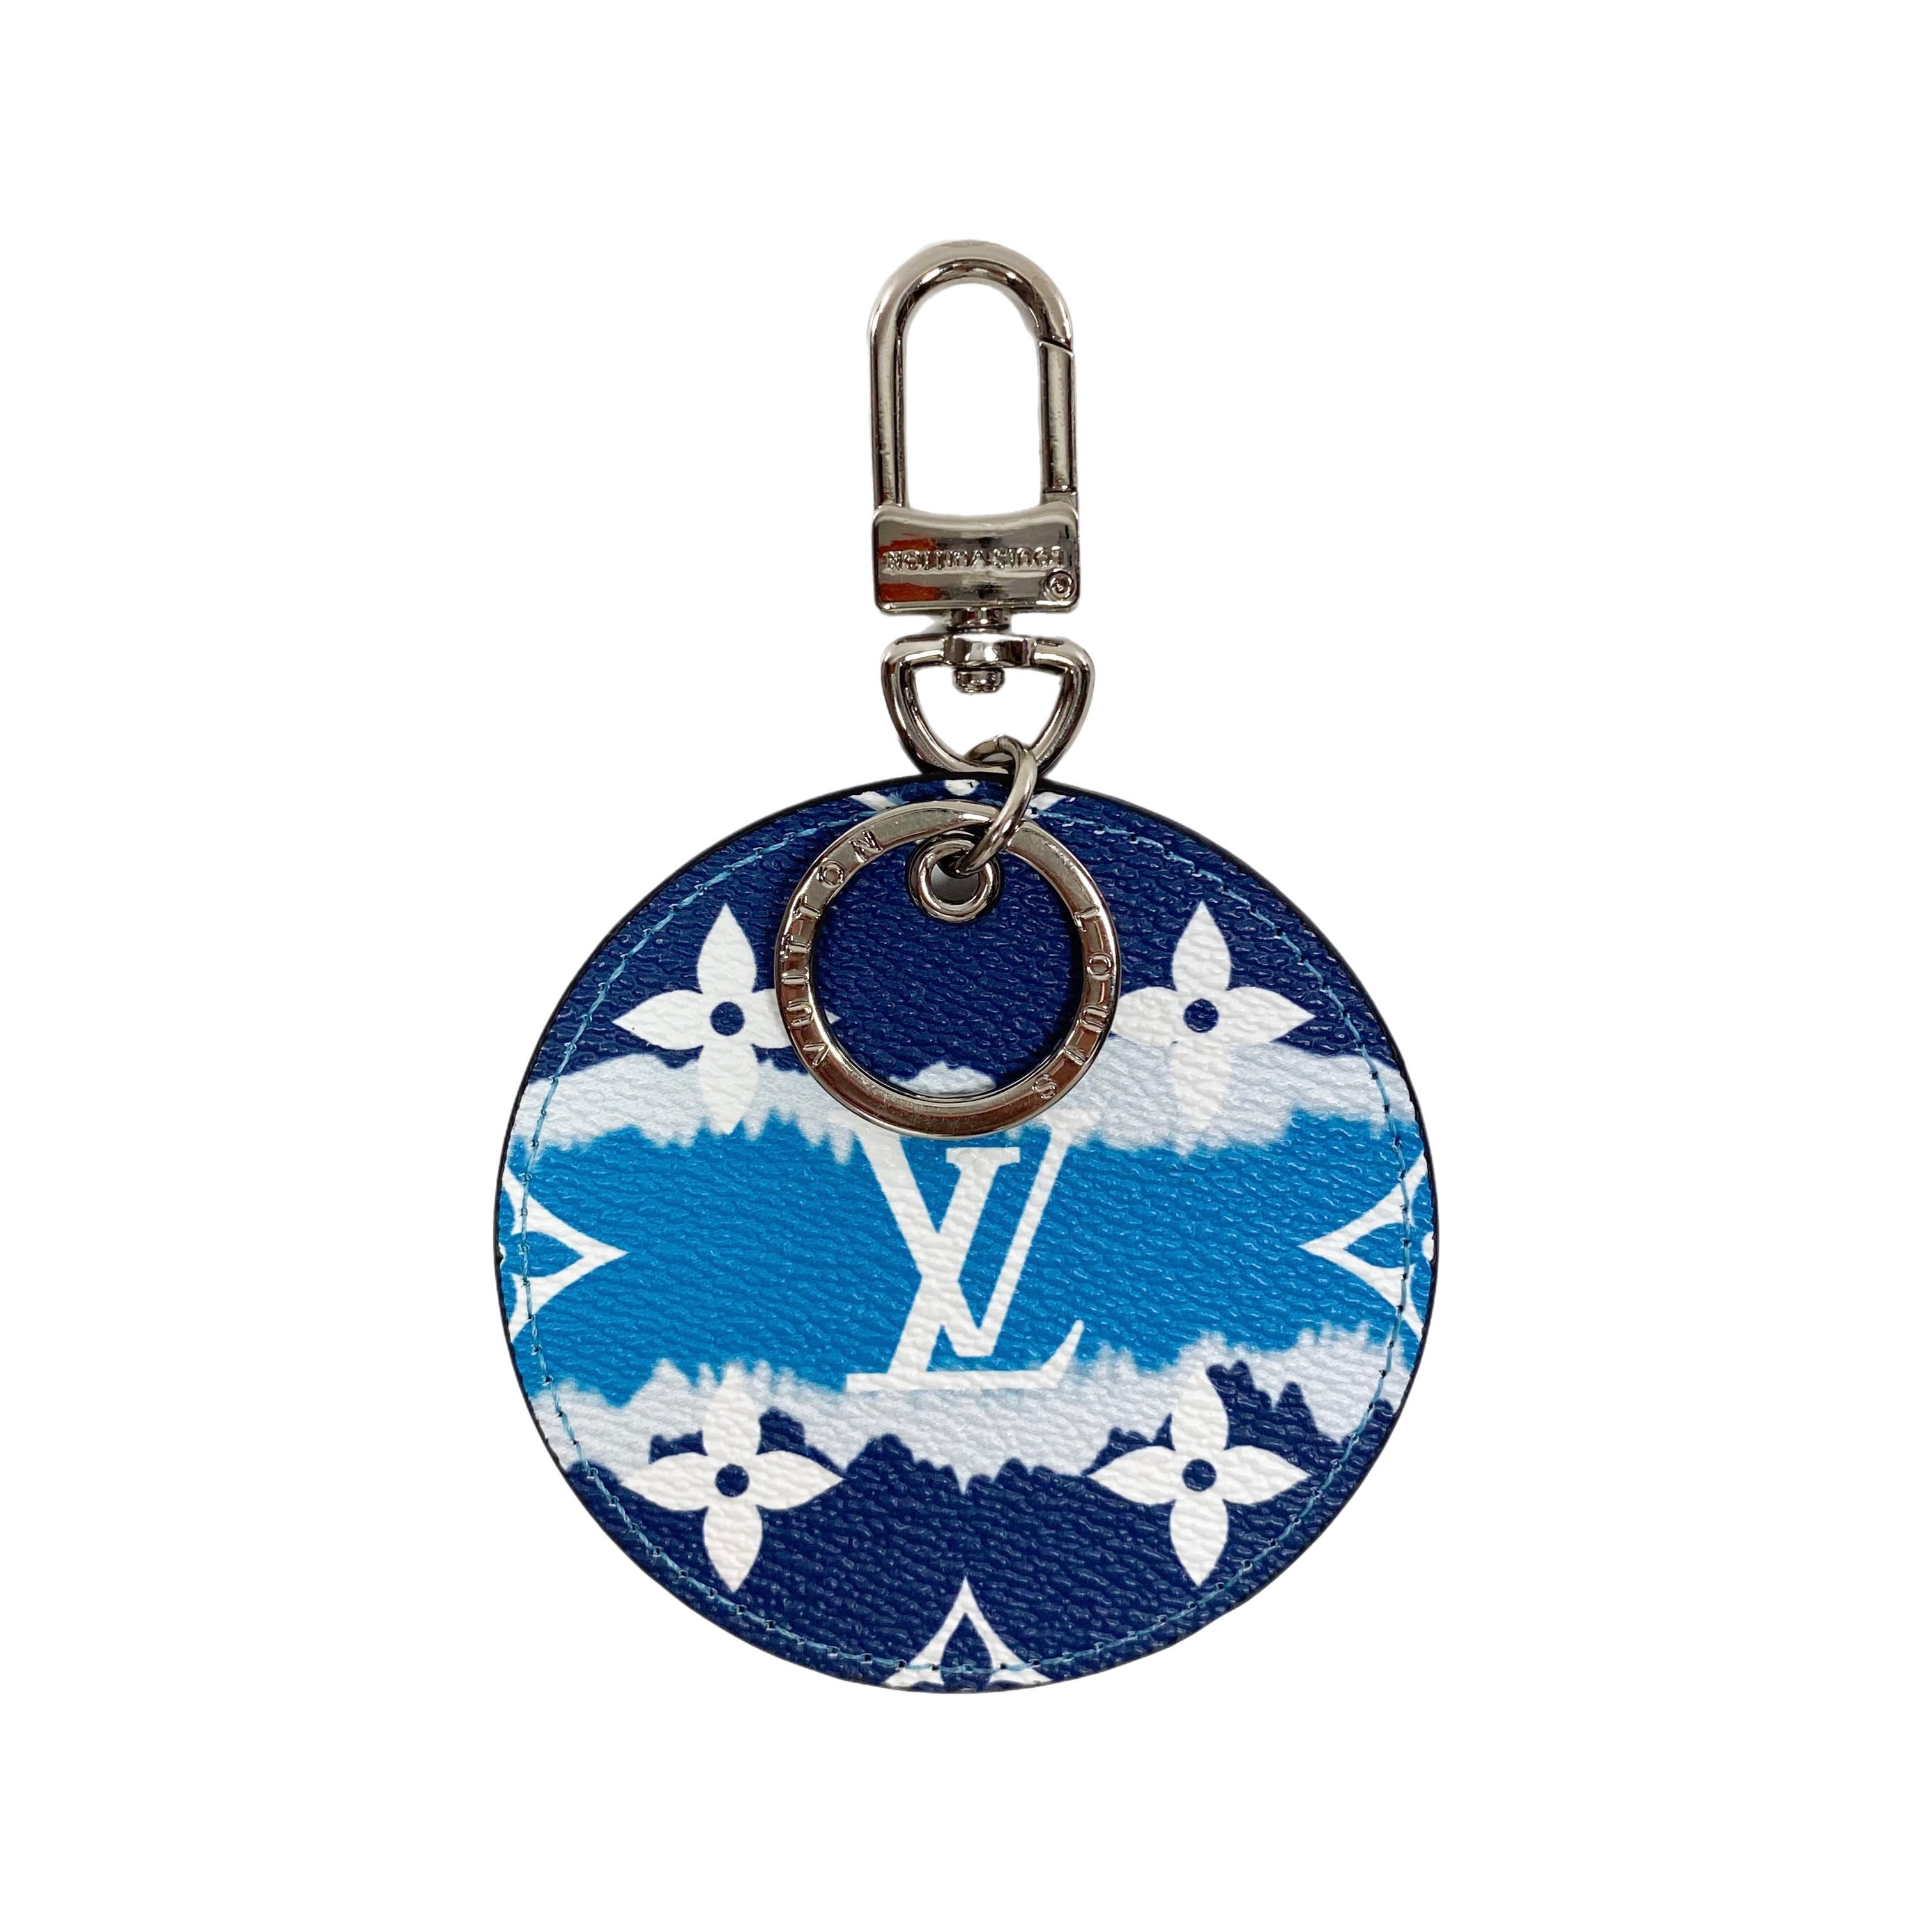 Louis Vuitton Limited Edition Escale Monogram Bag Charm